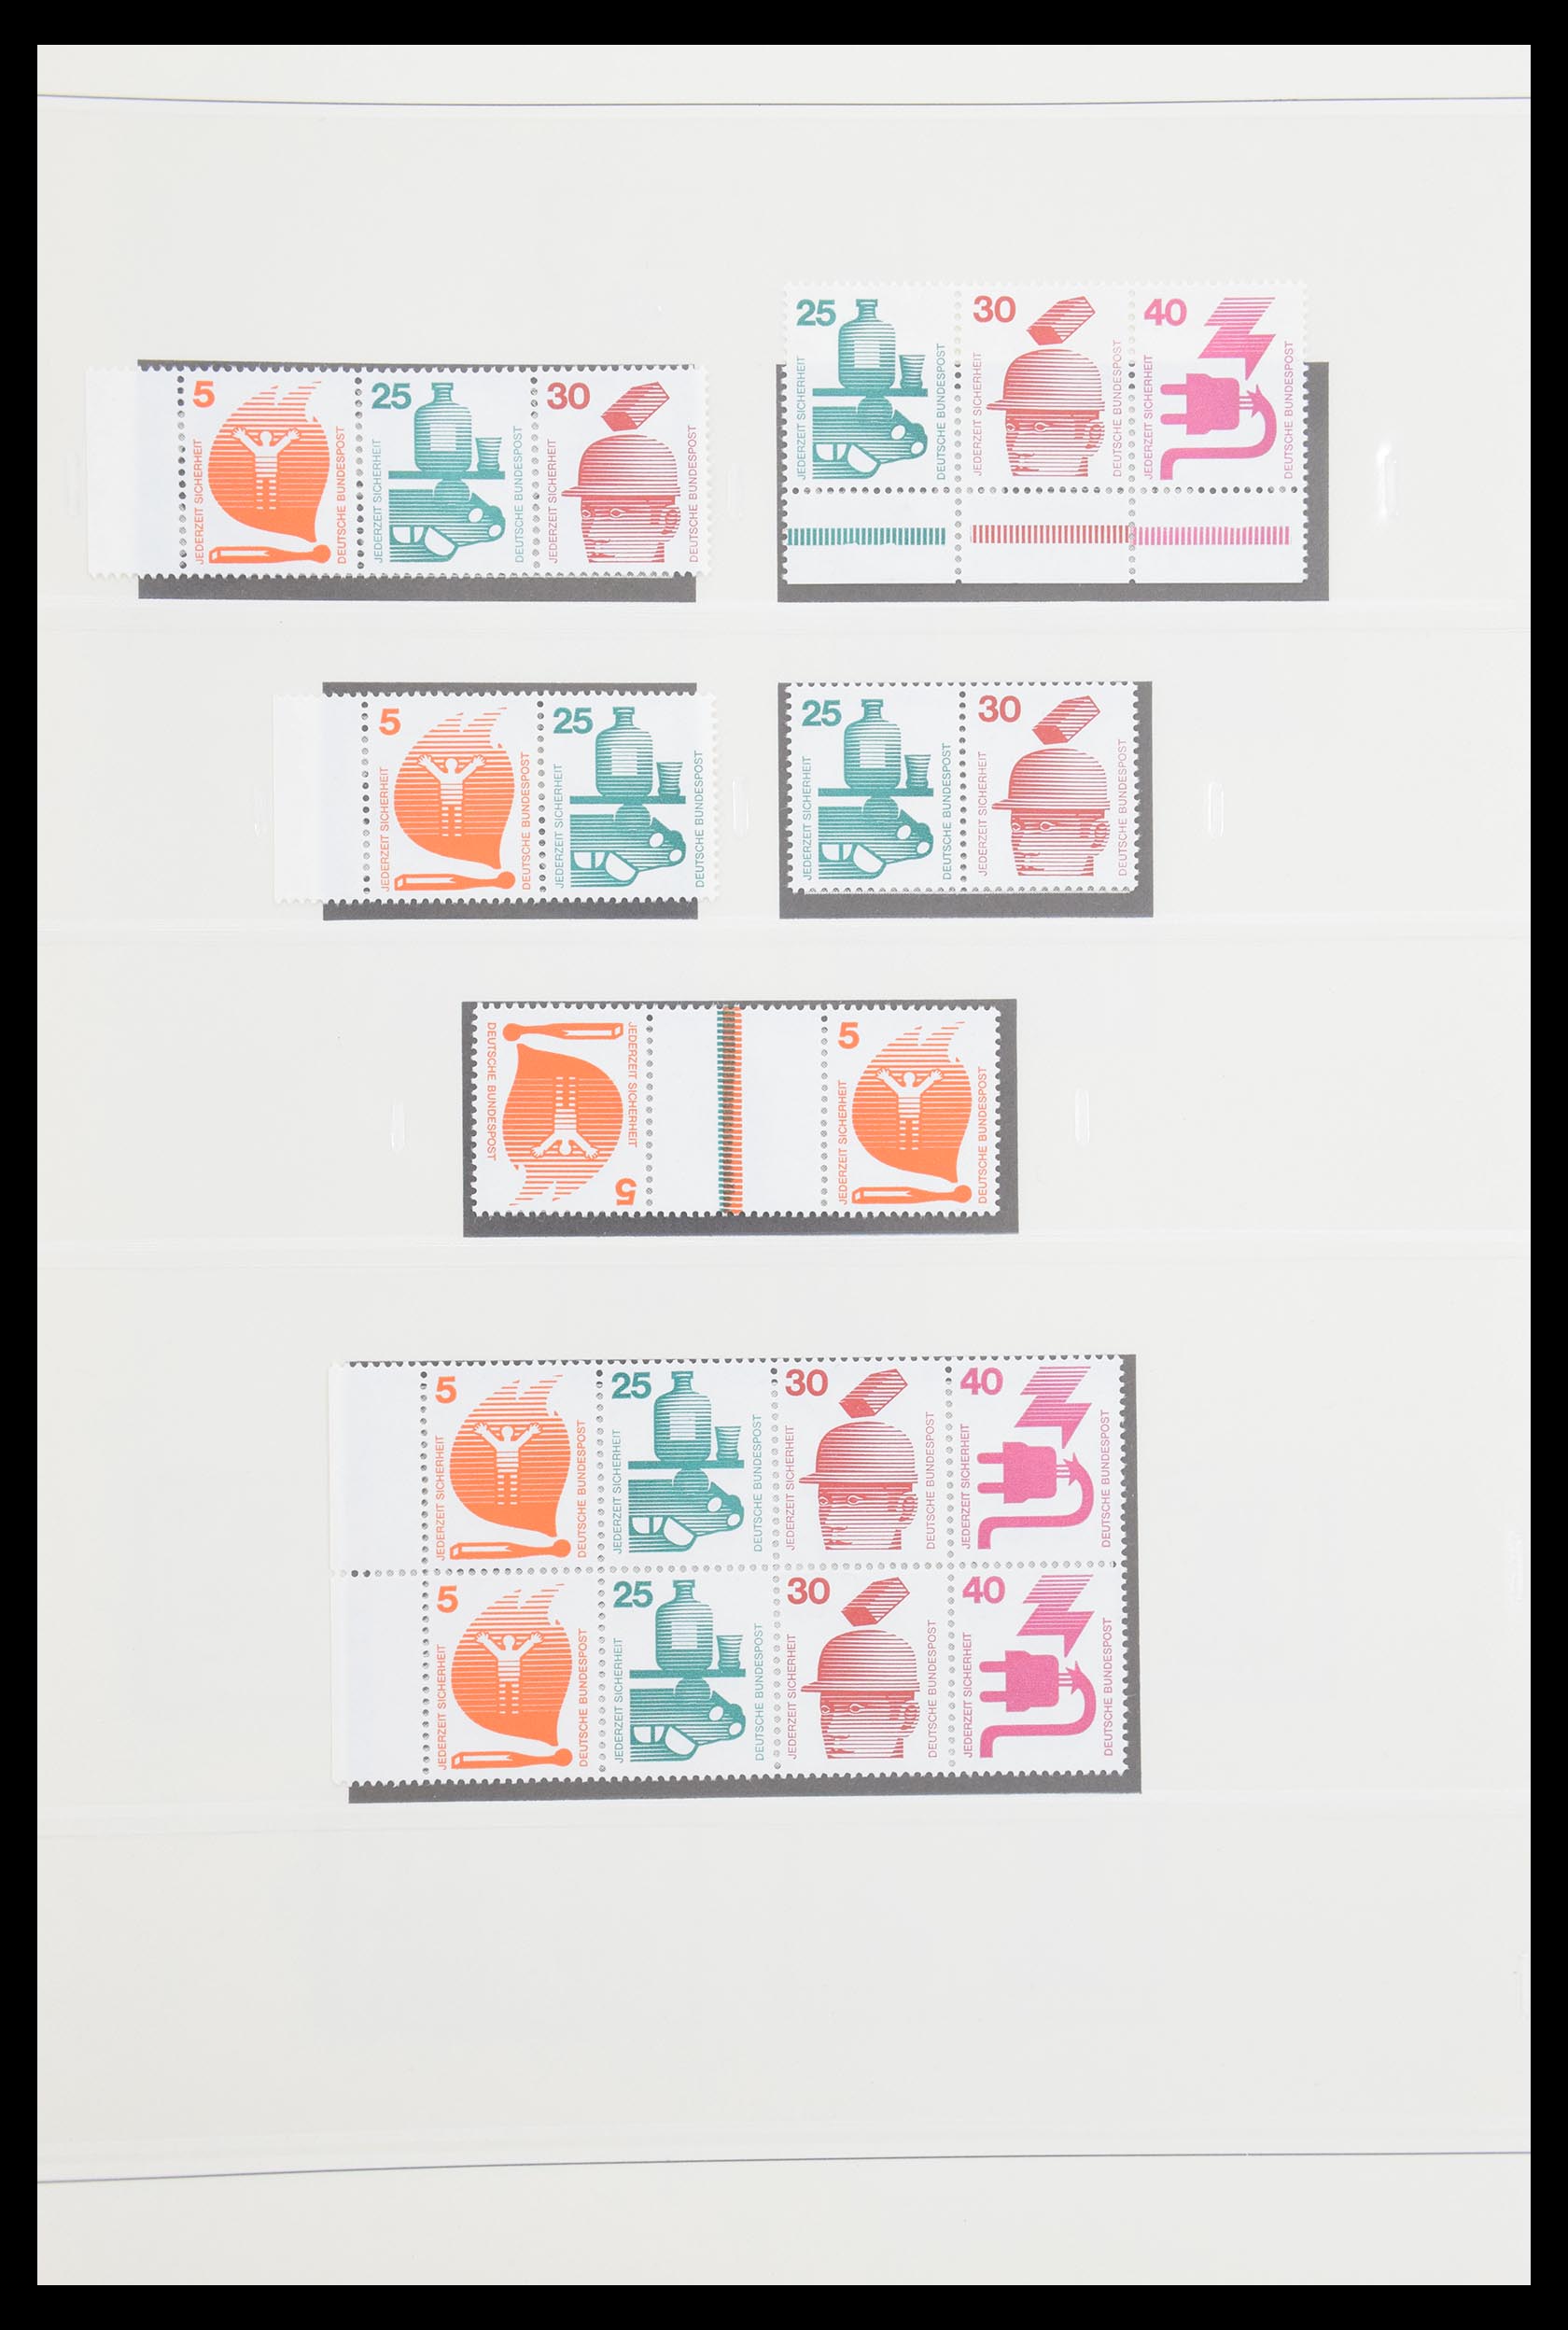 30605 038 - 30605 Bundespost combinaties 1951-1974.